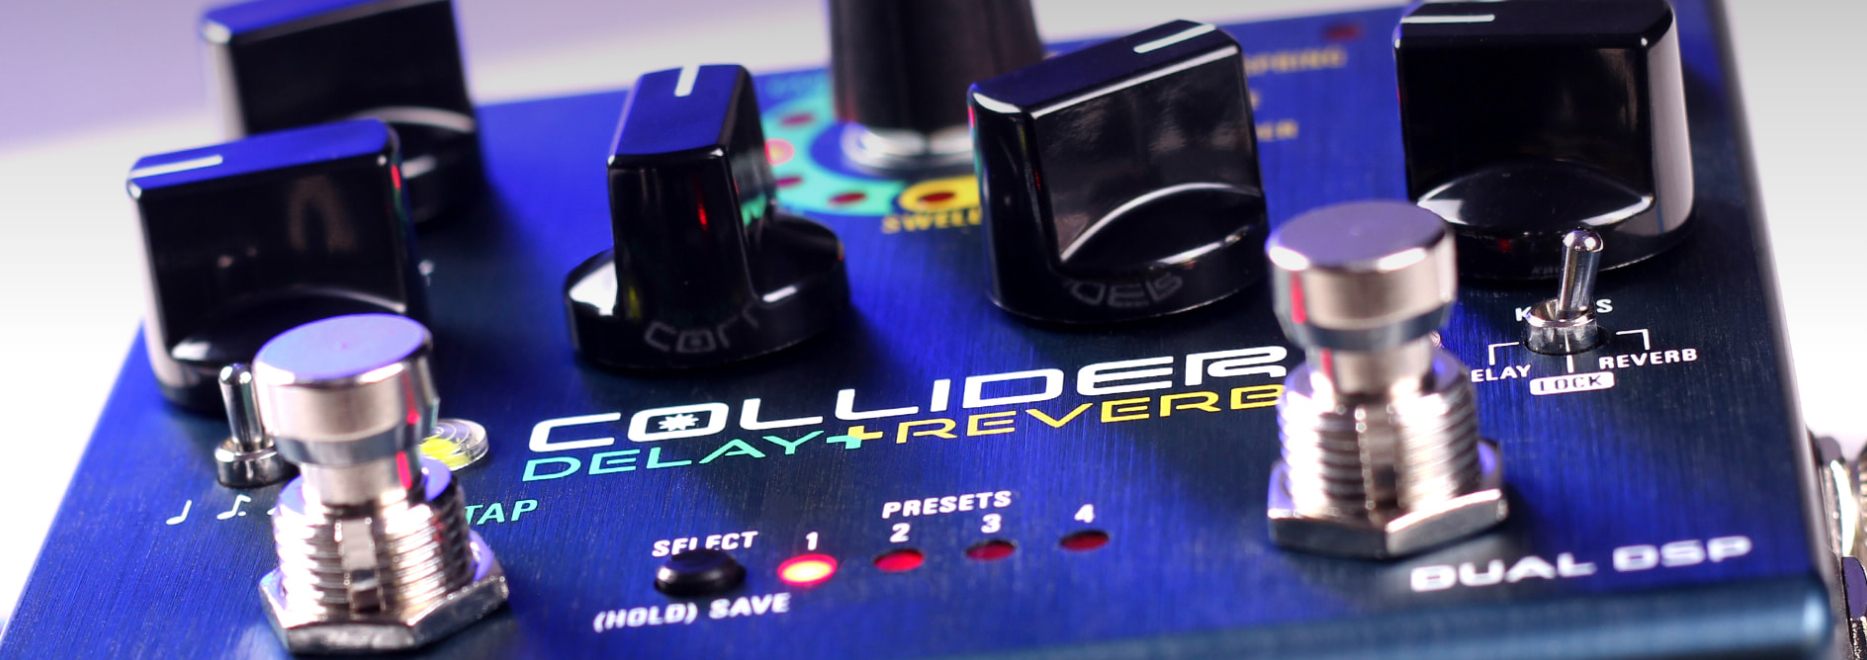 Source Audio Collider Delay+reverb - Pedal de reverb / delay / eco - Variation 2